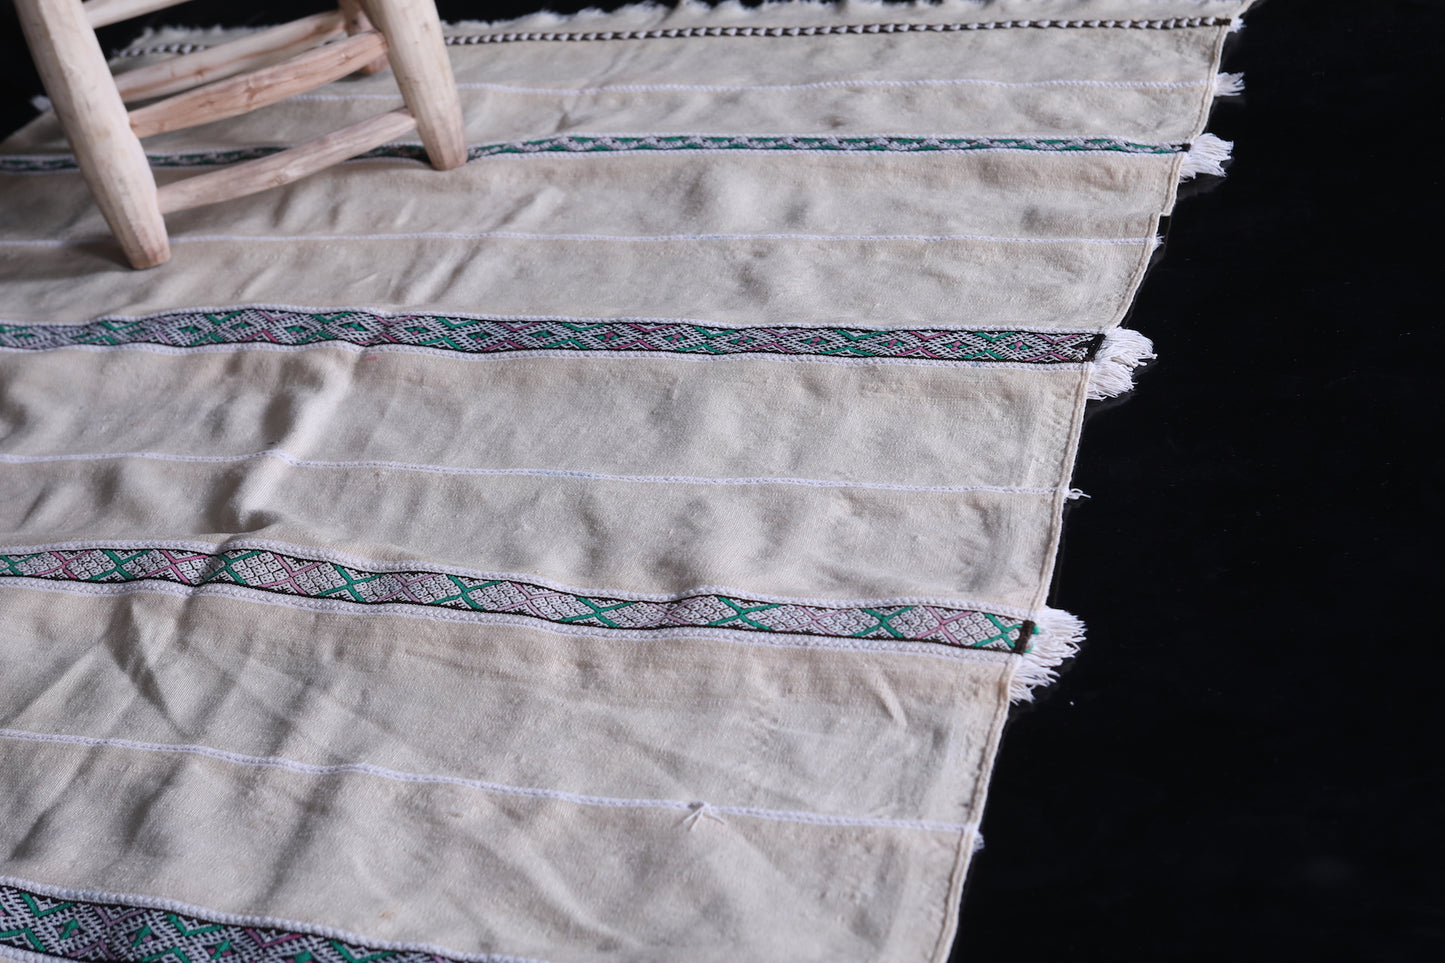 Berber wedding blanket 4 ft x 6.8 ft